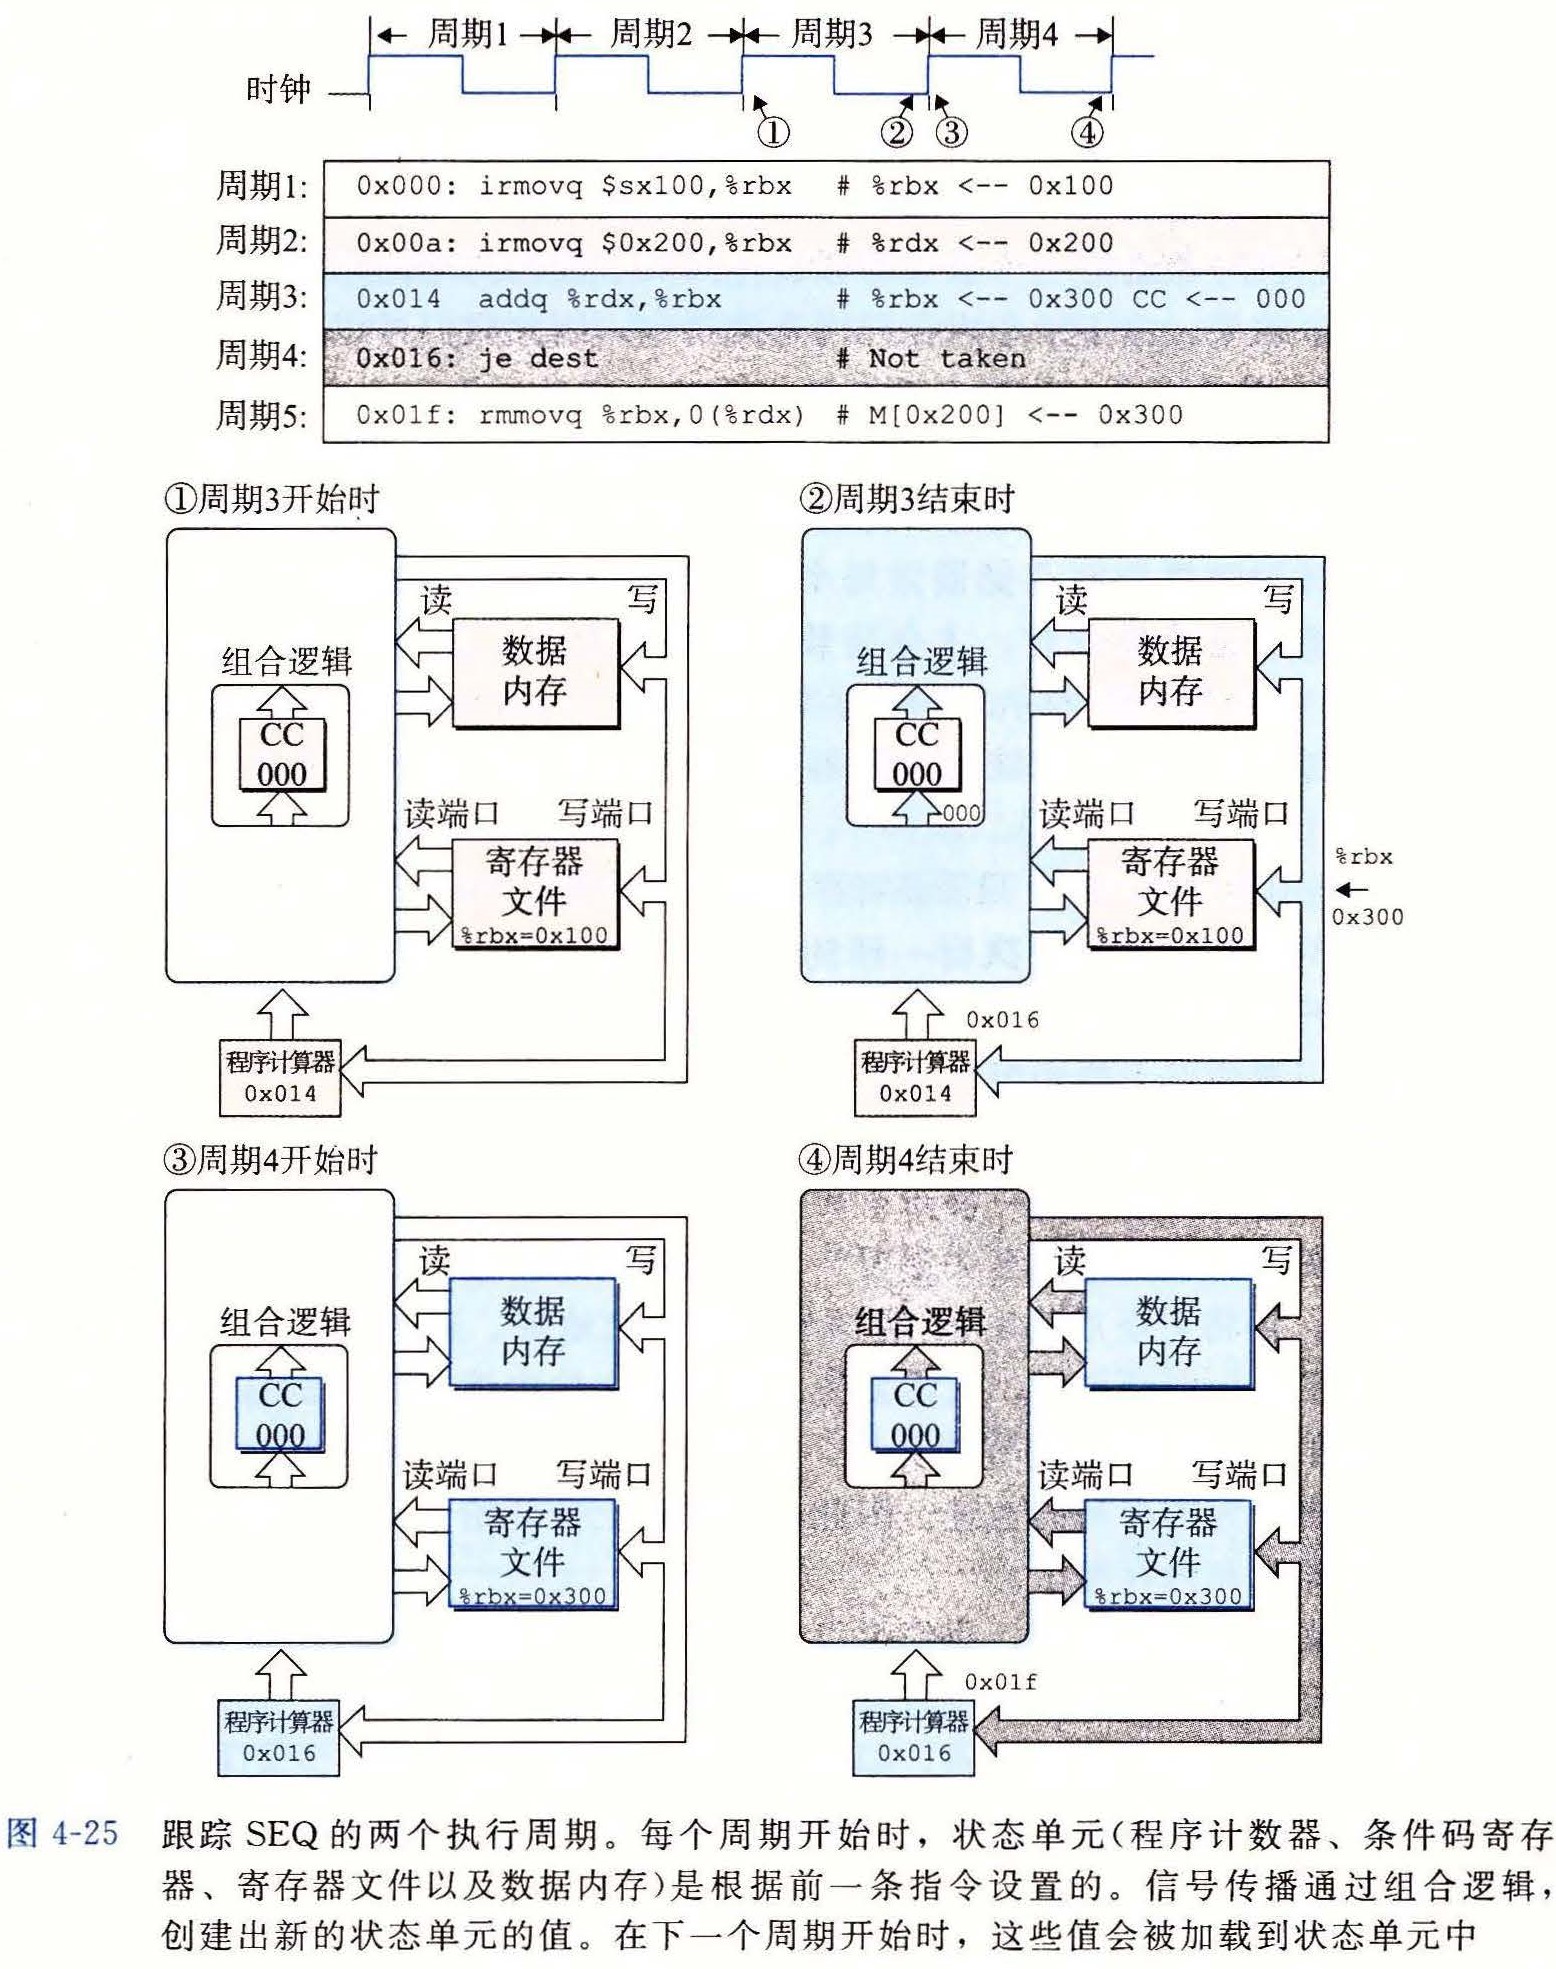 页面提取自－第4章 处理器体系结构 (2)